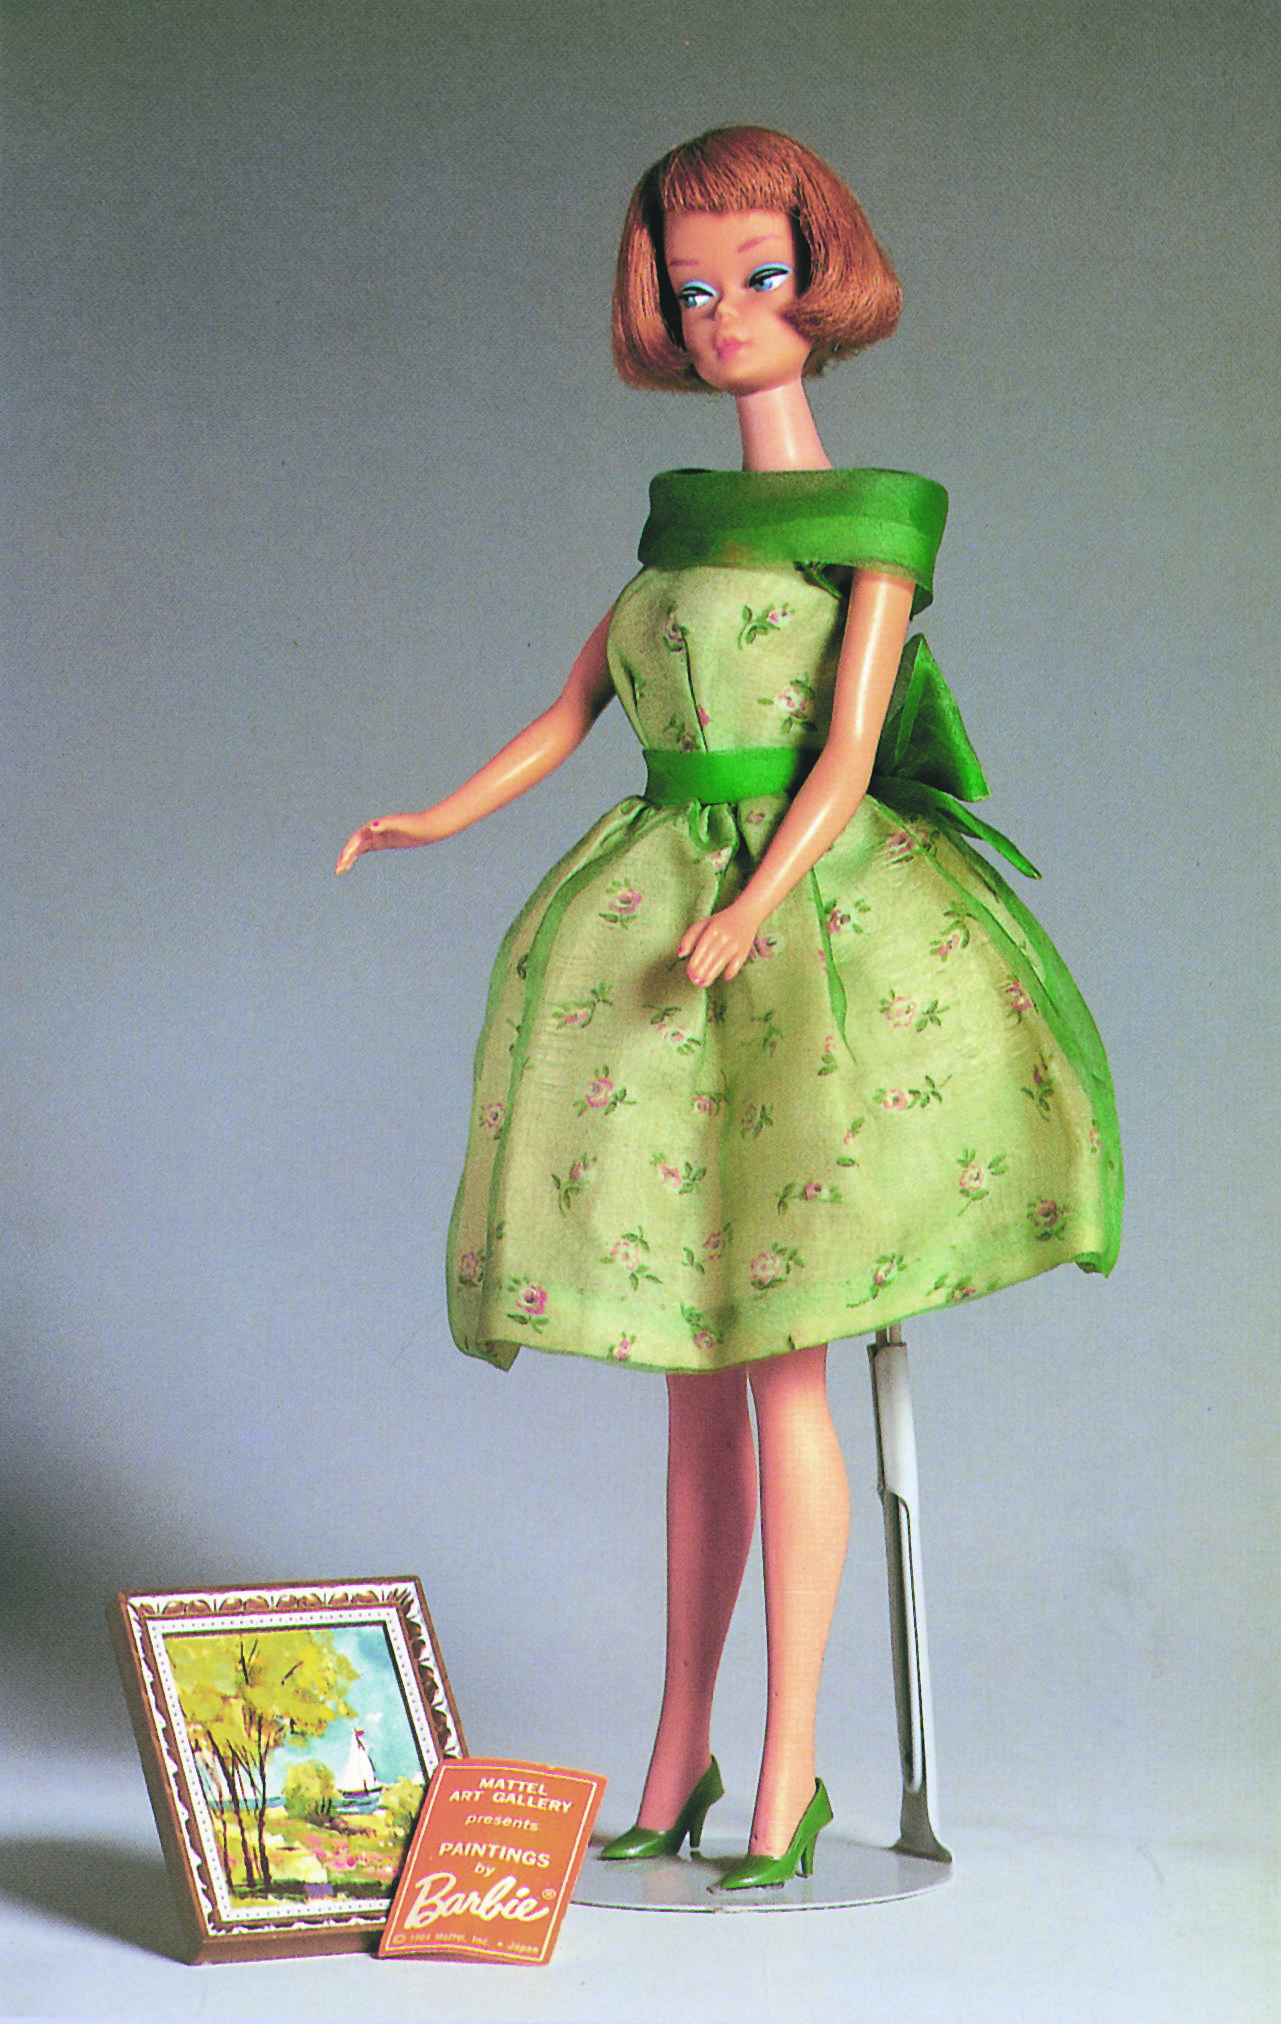 Barbie American Girl (1965) sfoggia l'outfit Modern Art (1964), abito floreale da vernissage in tulle di seta, completato da un quadro impressionista e dall'invito di galleria (Mattel / Art Gallery / PAINTINGS / by/ Barbie® / © 1964 Mattel Inc. Japan)